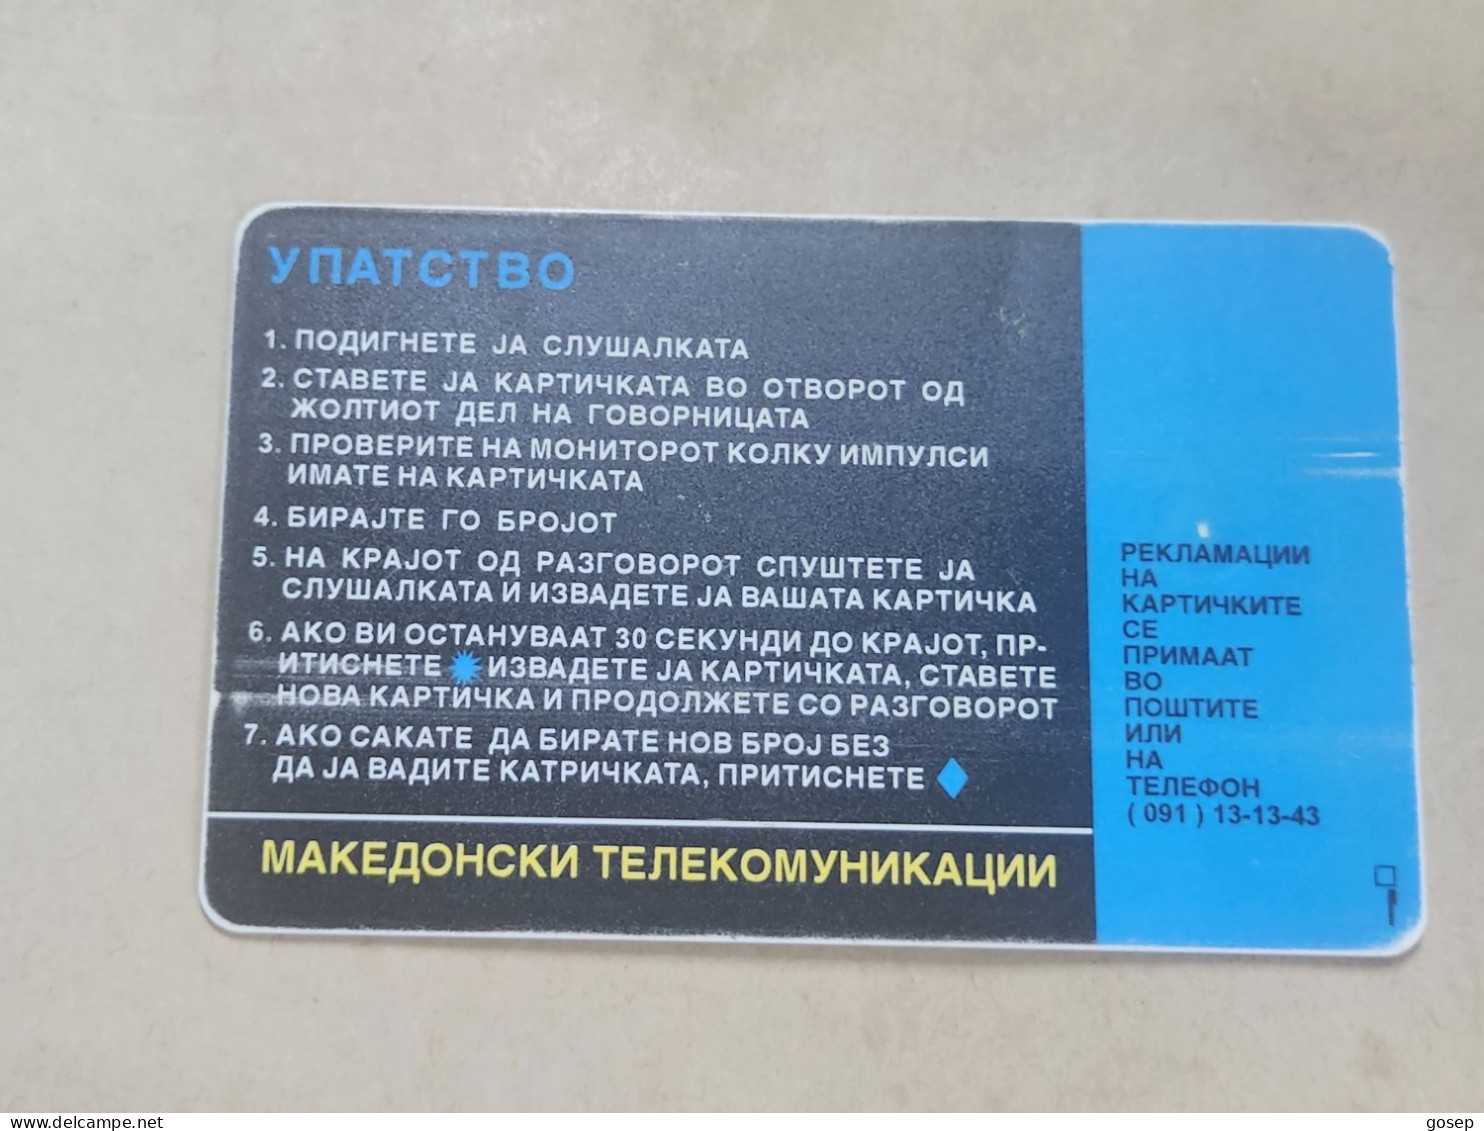 Macedonia-(MK-MAT-0001A)-ISDN/istructions-(30)-(4/97)-(200units)-(00162537)-tirage-70.000-used Card+1card Prepiad Free - North Macedonia